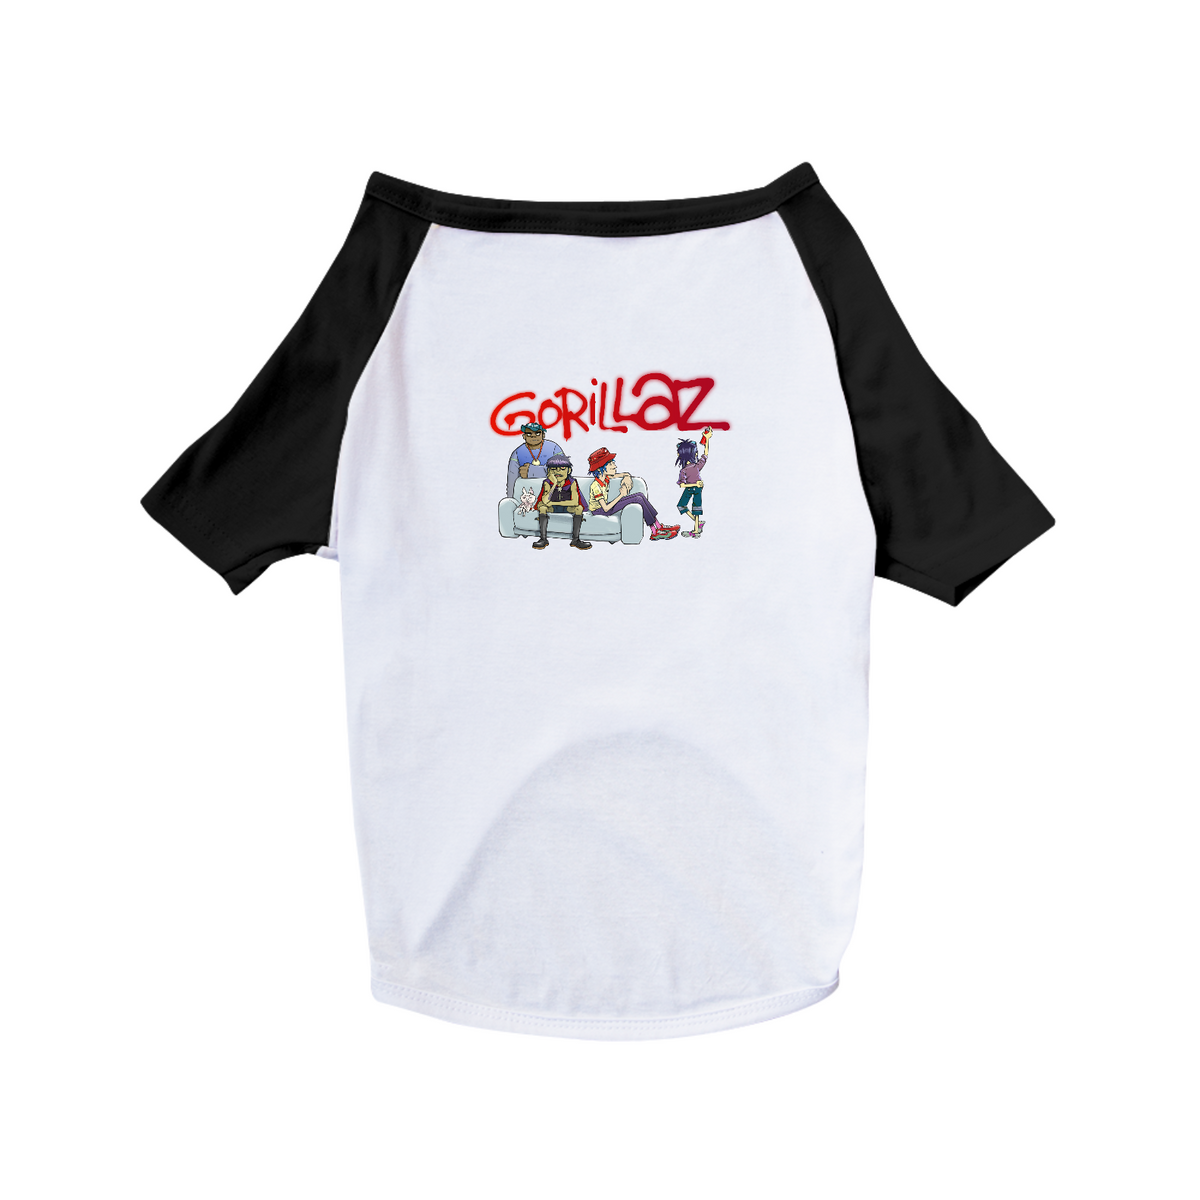 Nome do produto: Camiseta Pet 002 - Gorillaz